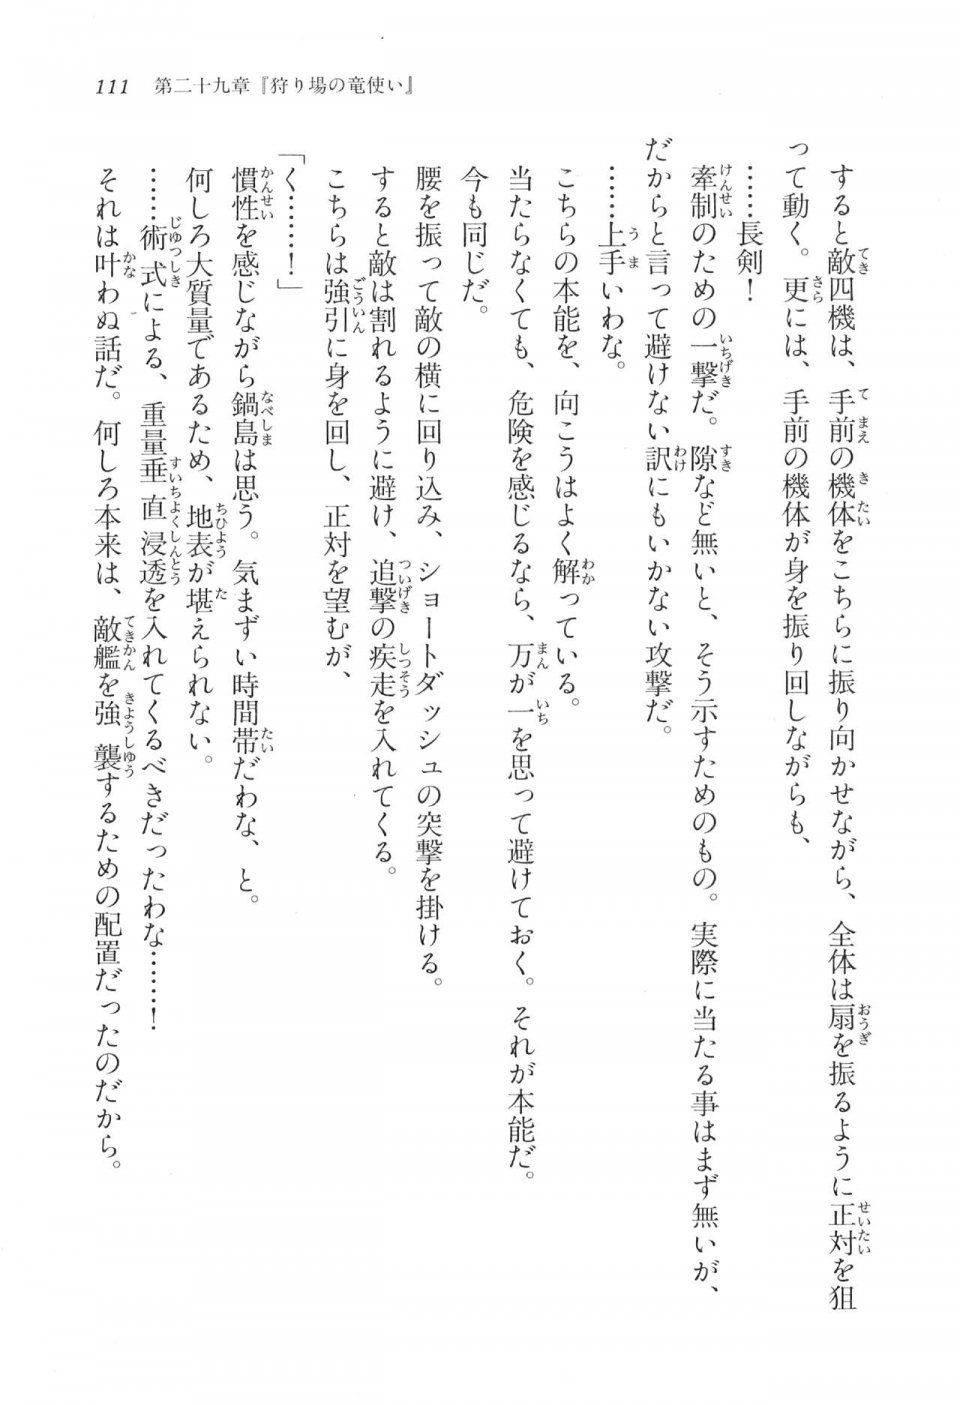 Kyoukai Senjou no Horizon LN Vol 17(7B) - Photo #111